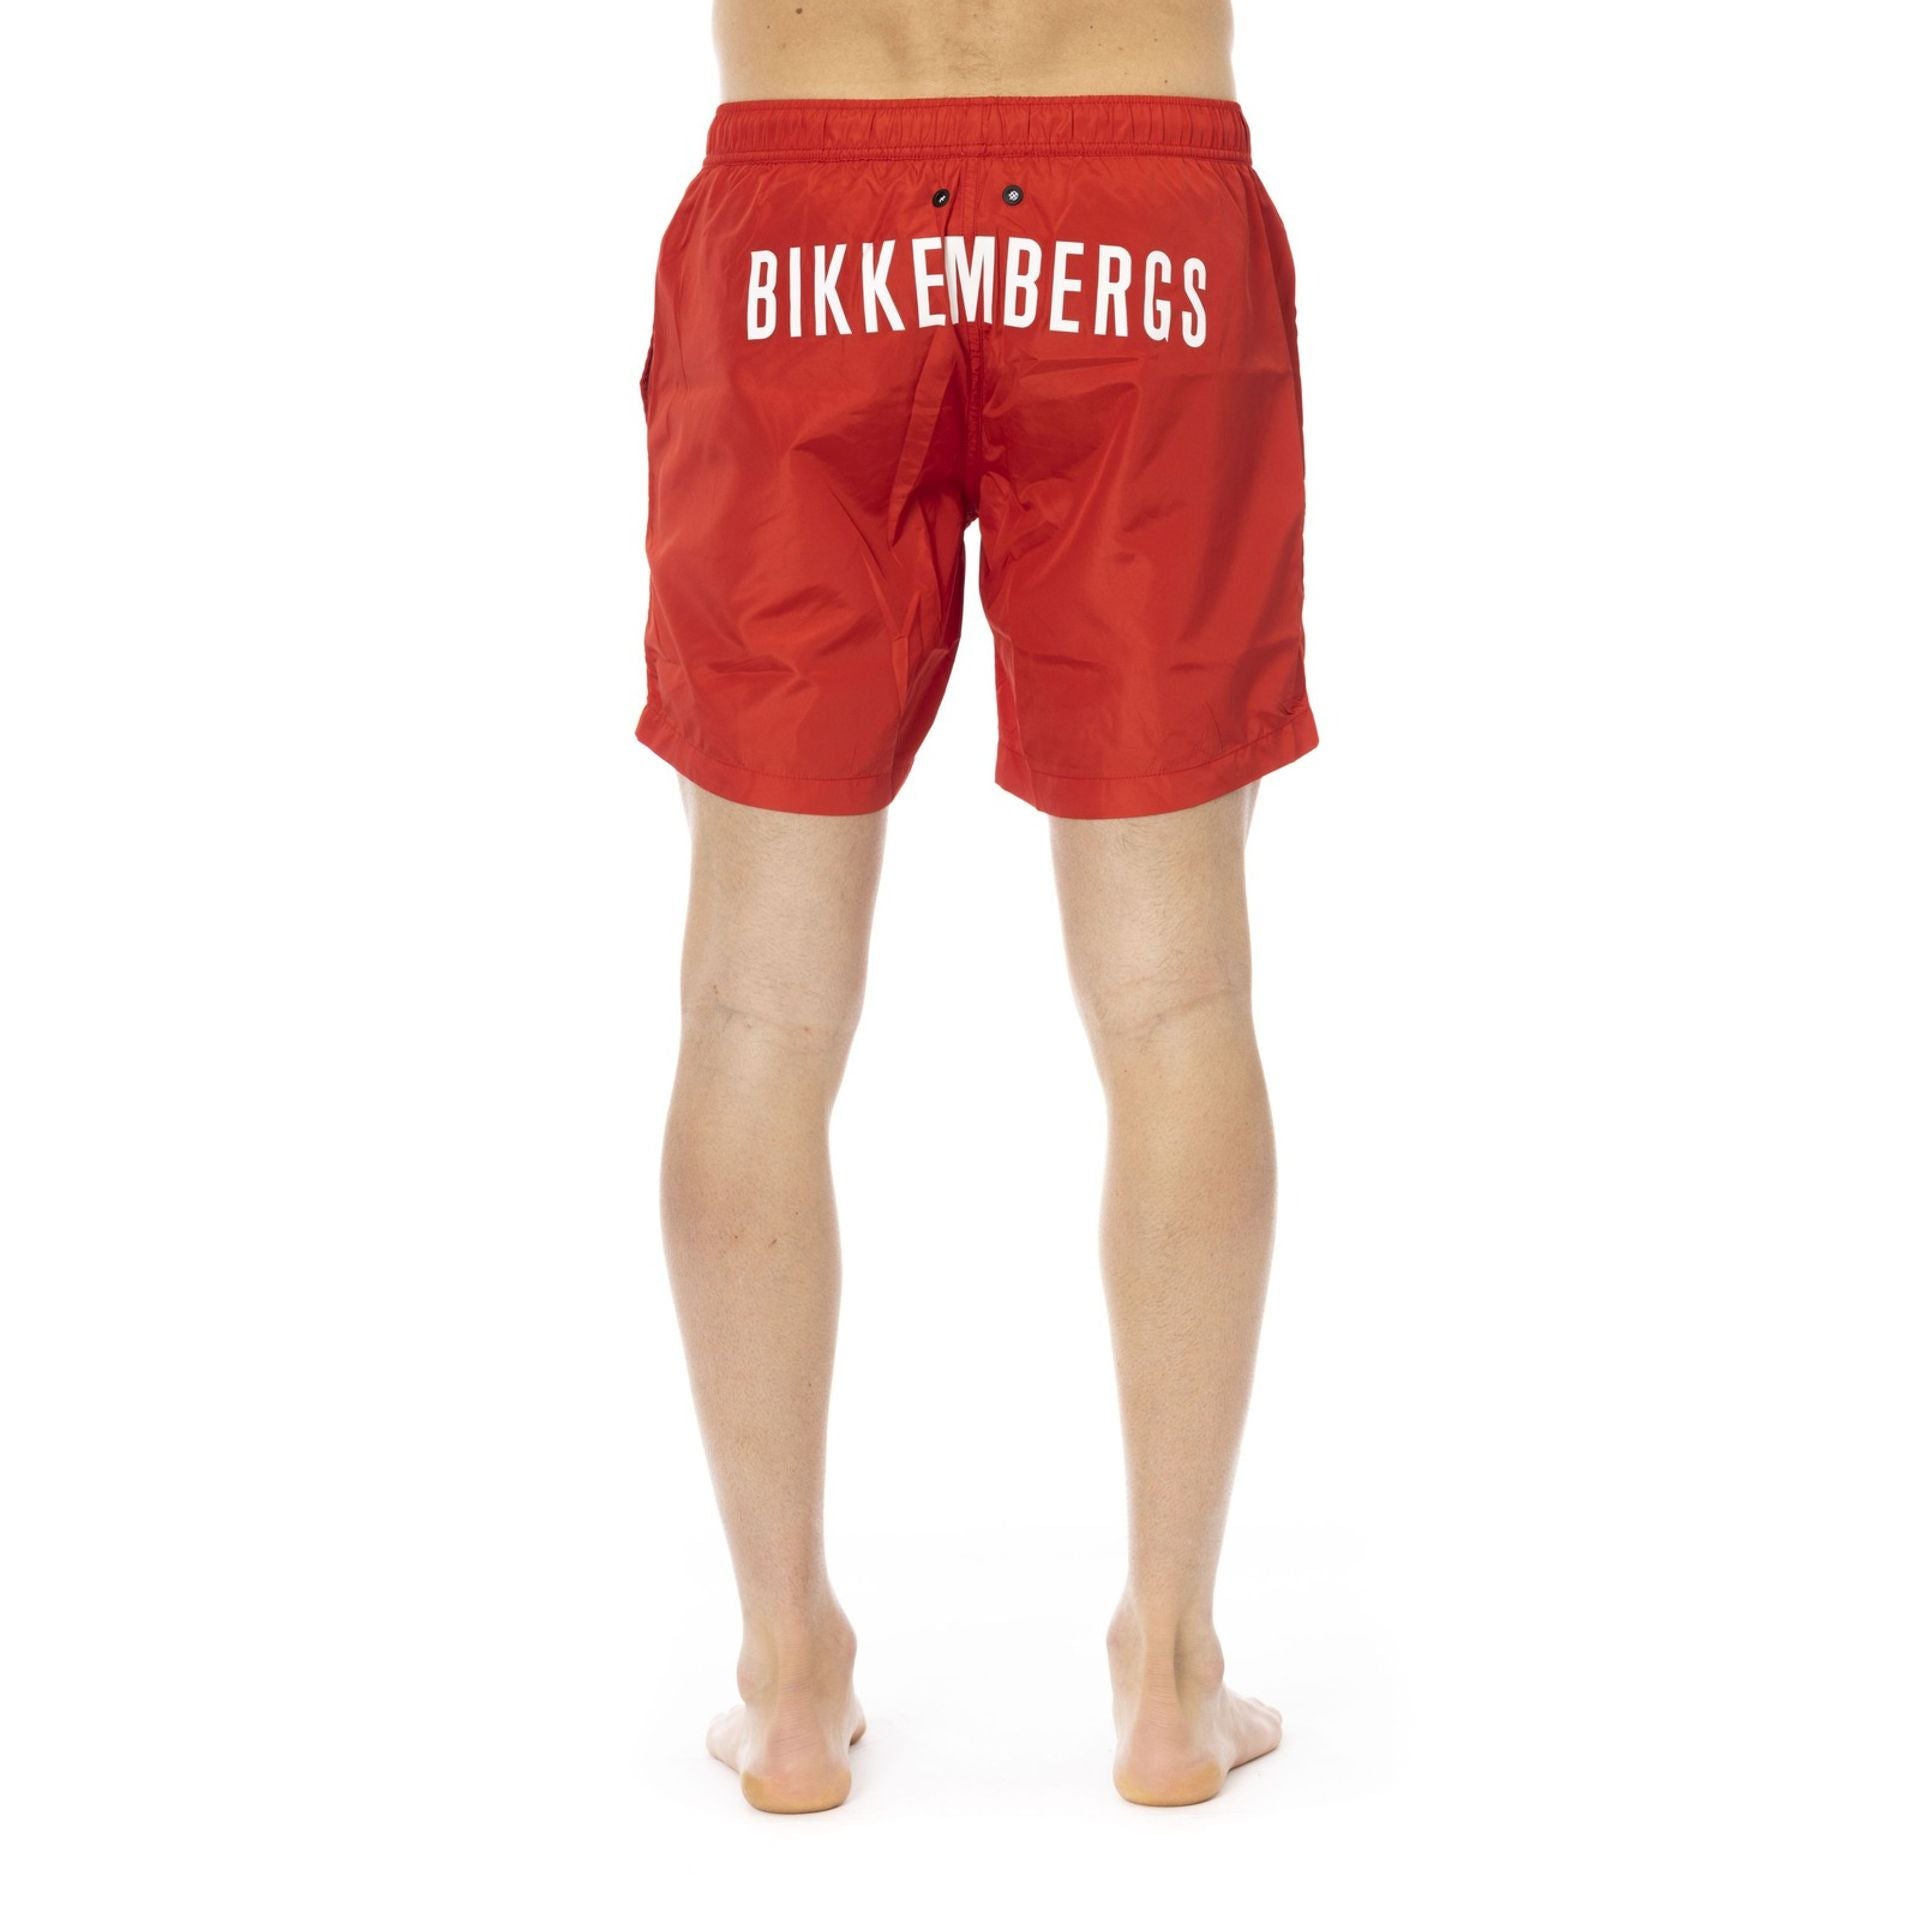 Bikkembergs Beachwear Costumi